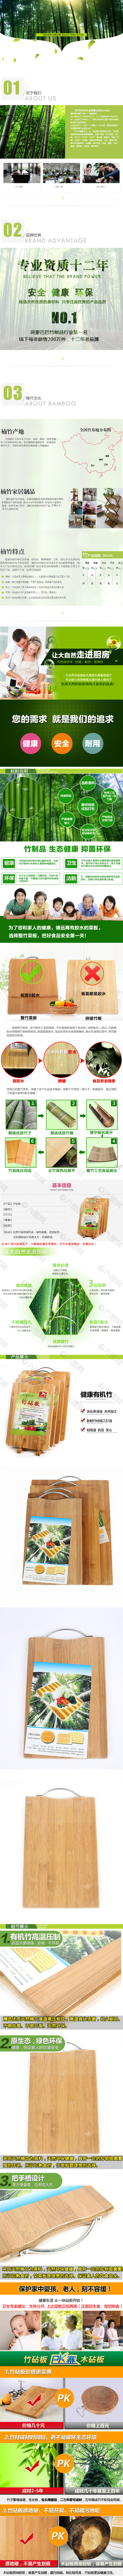 竹木砧板详情页